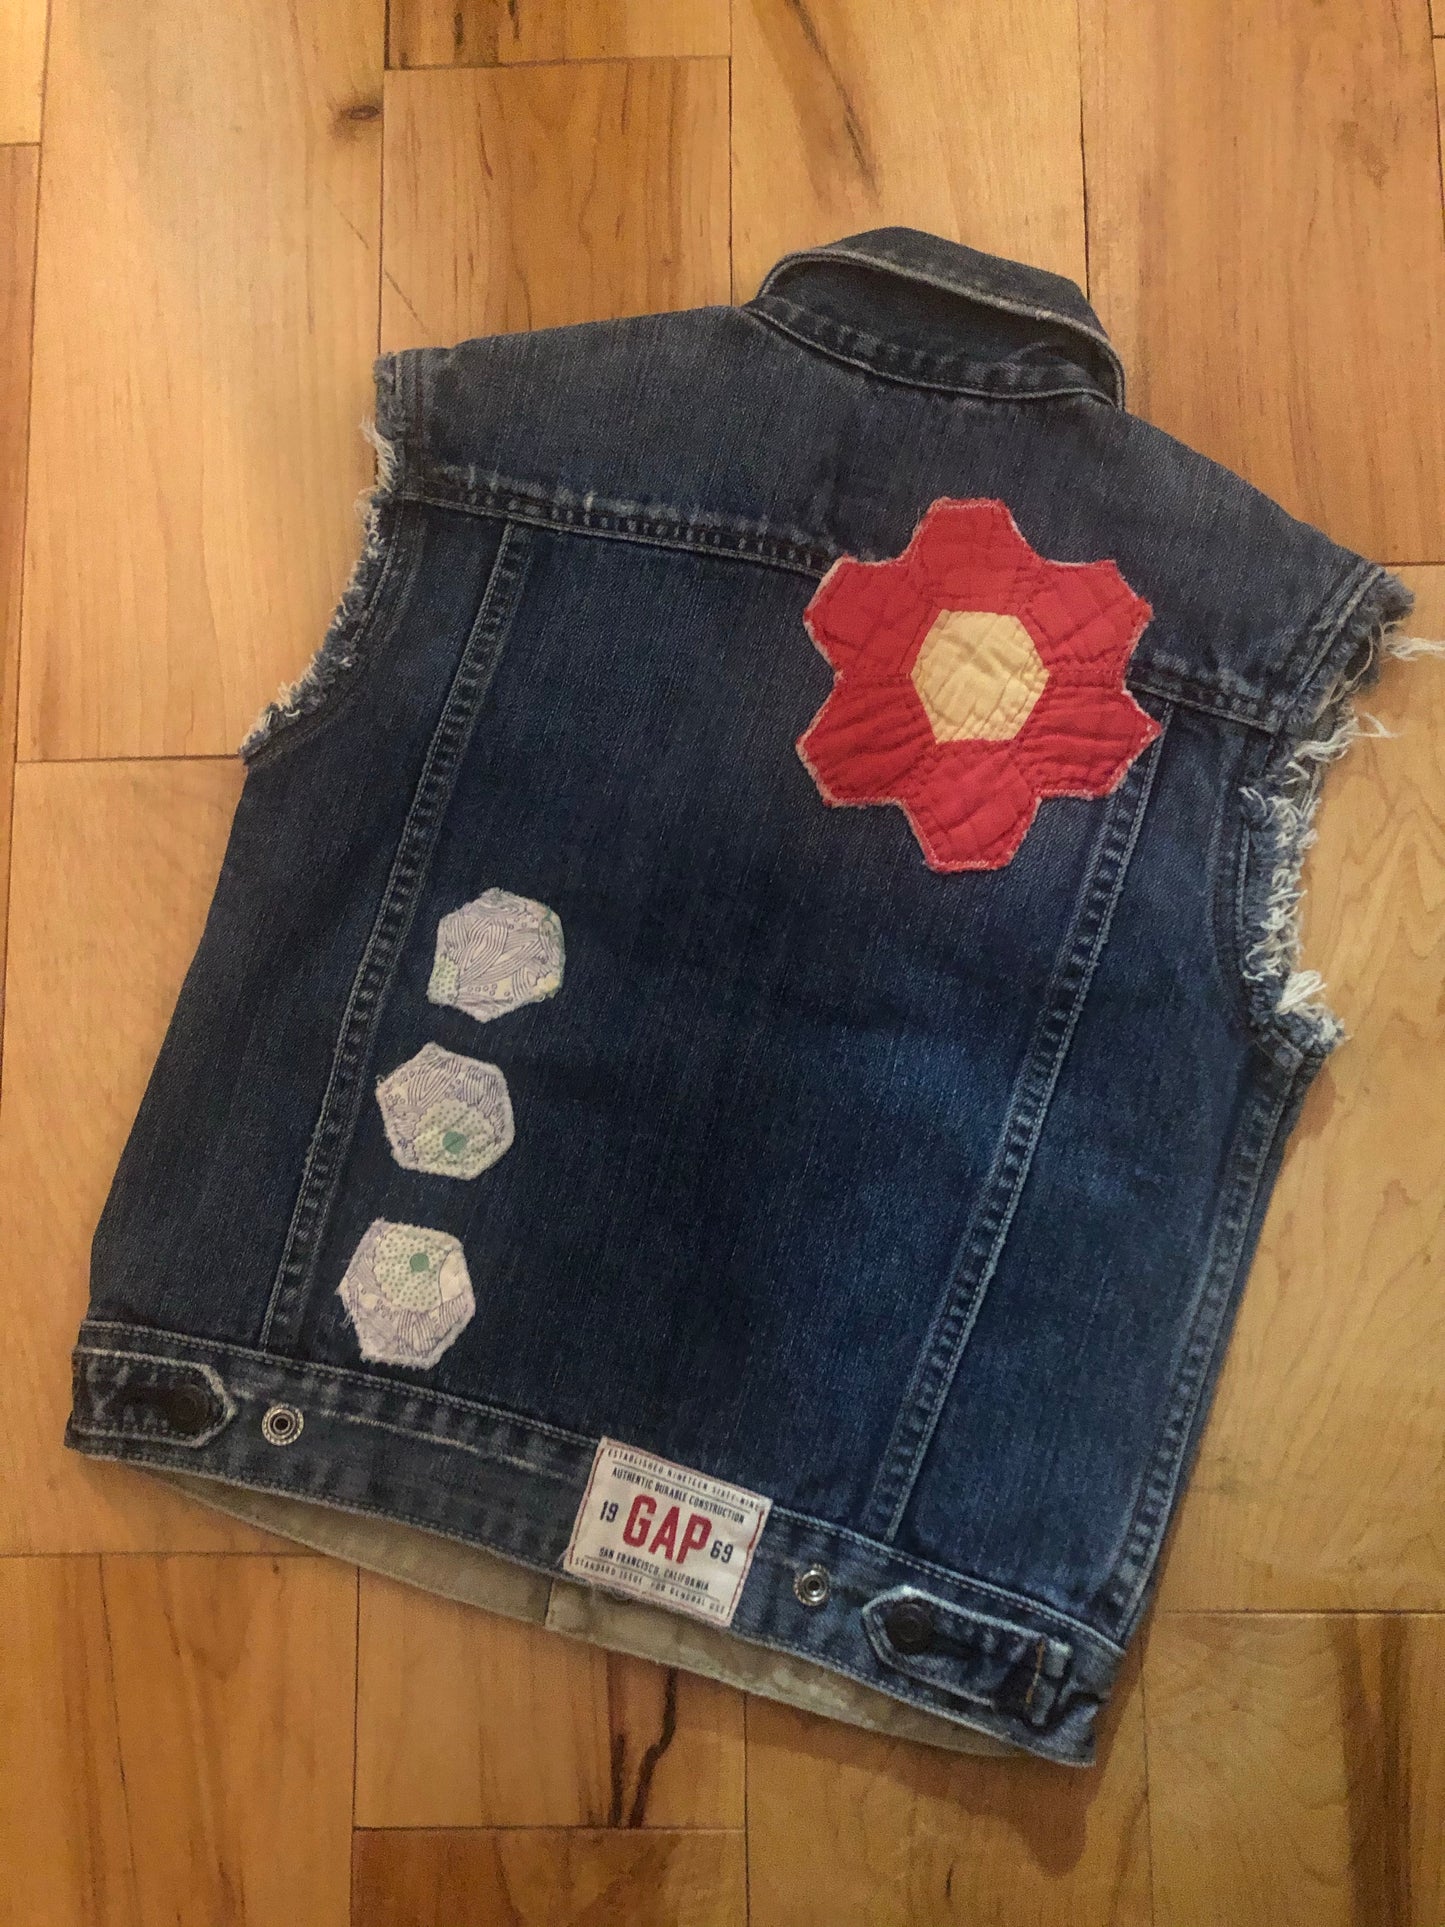 backside of kids denim jacket with stitched designs